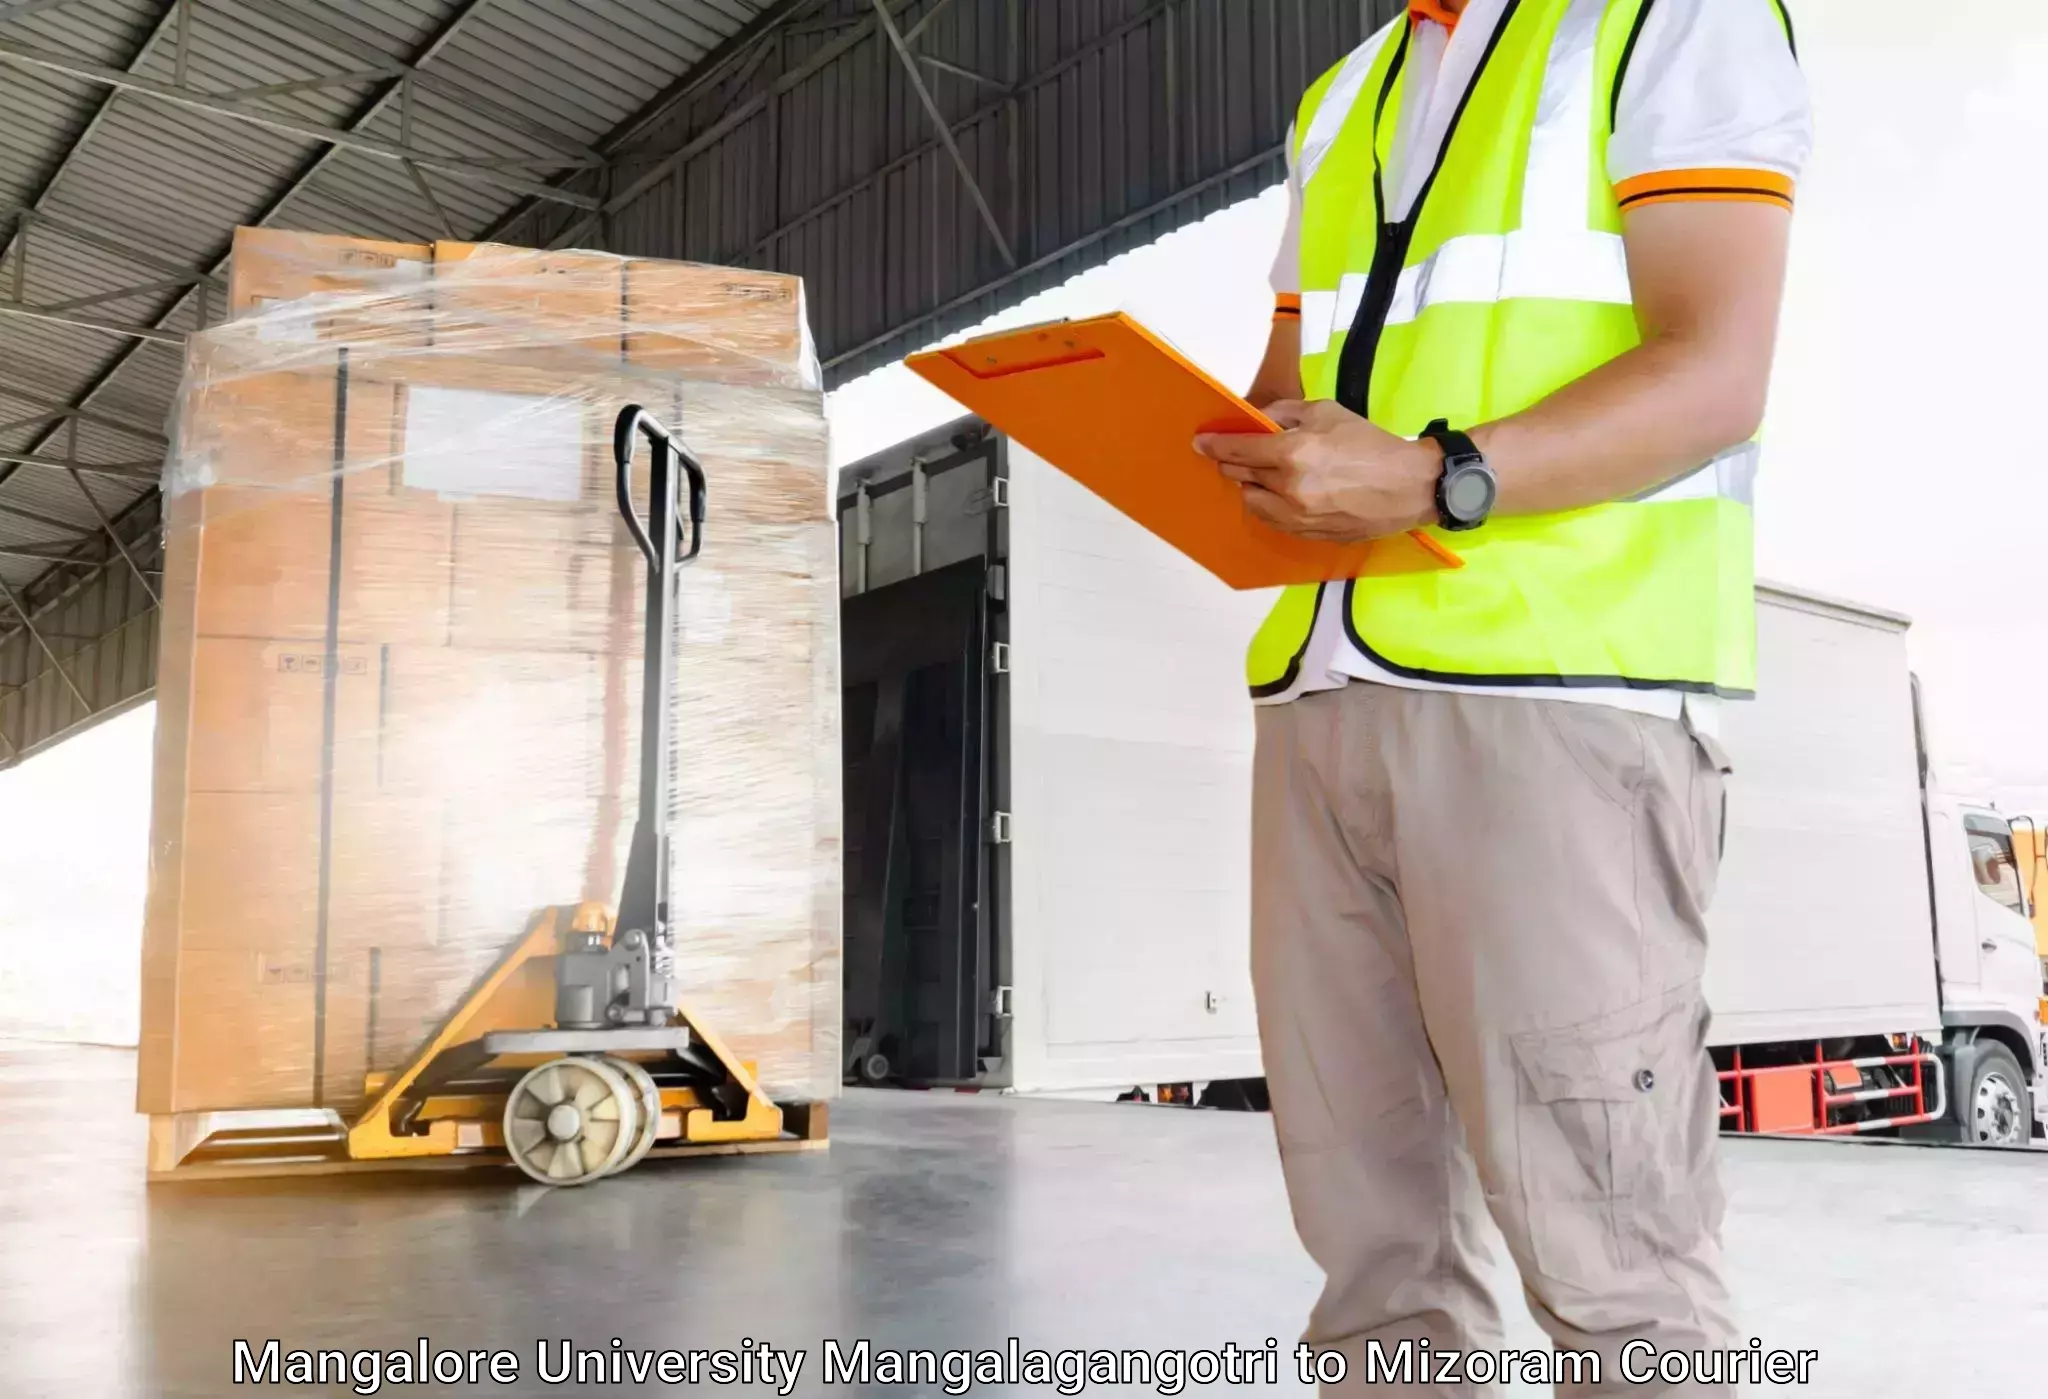 Heavy luggage shipping in Mangalore University Mangalagangotri to Mizoram